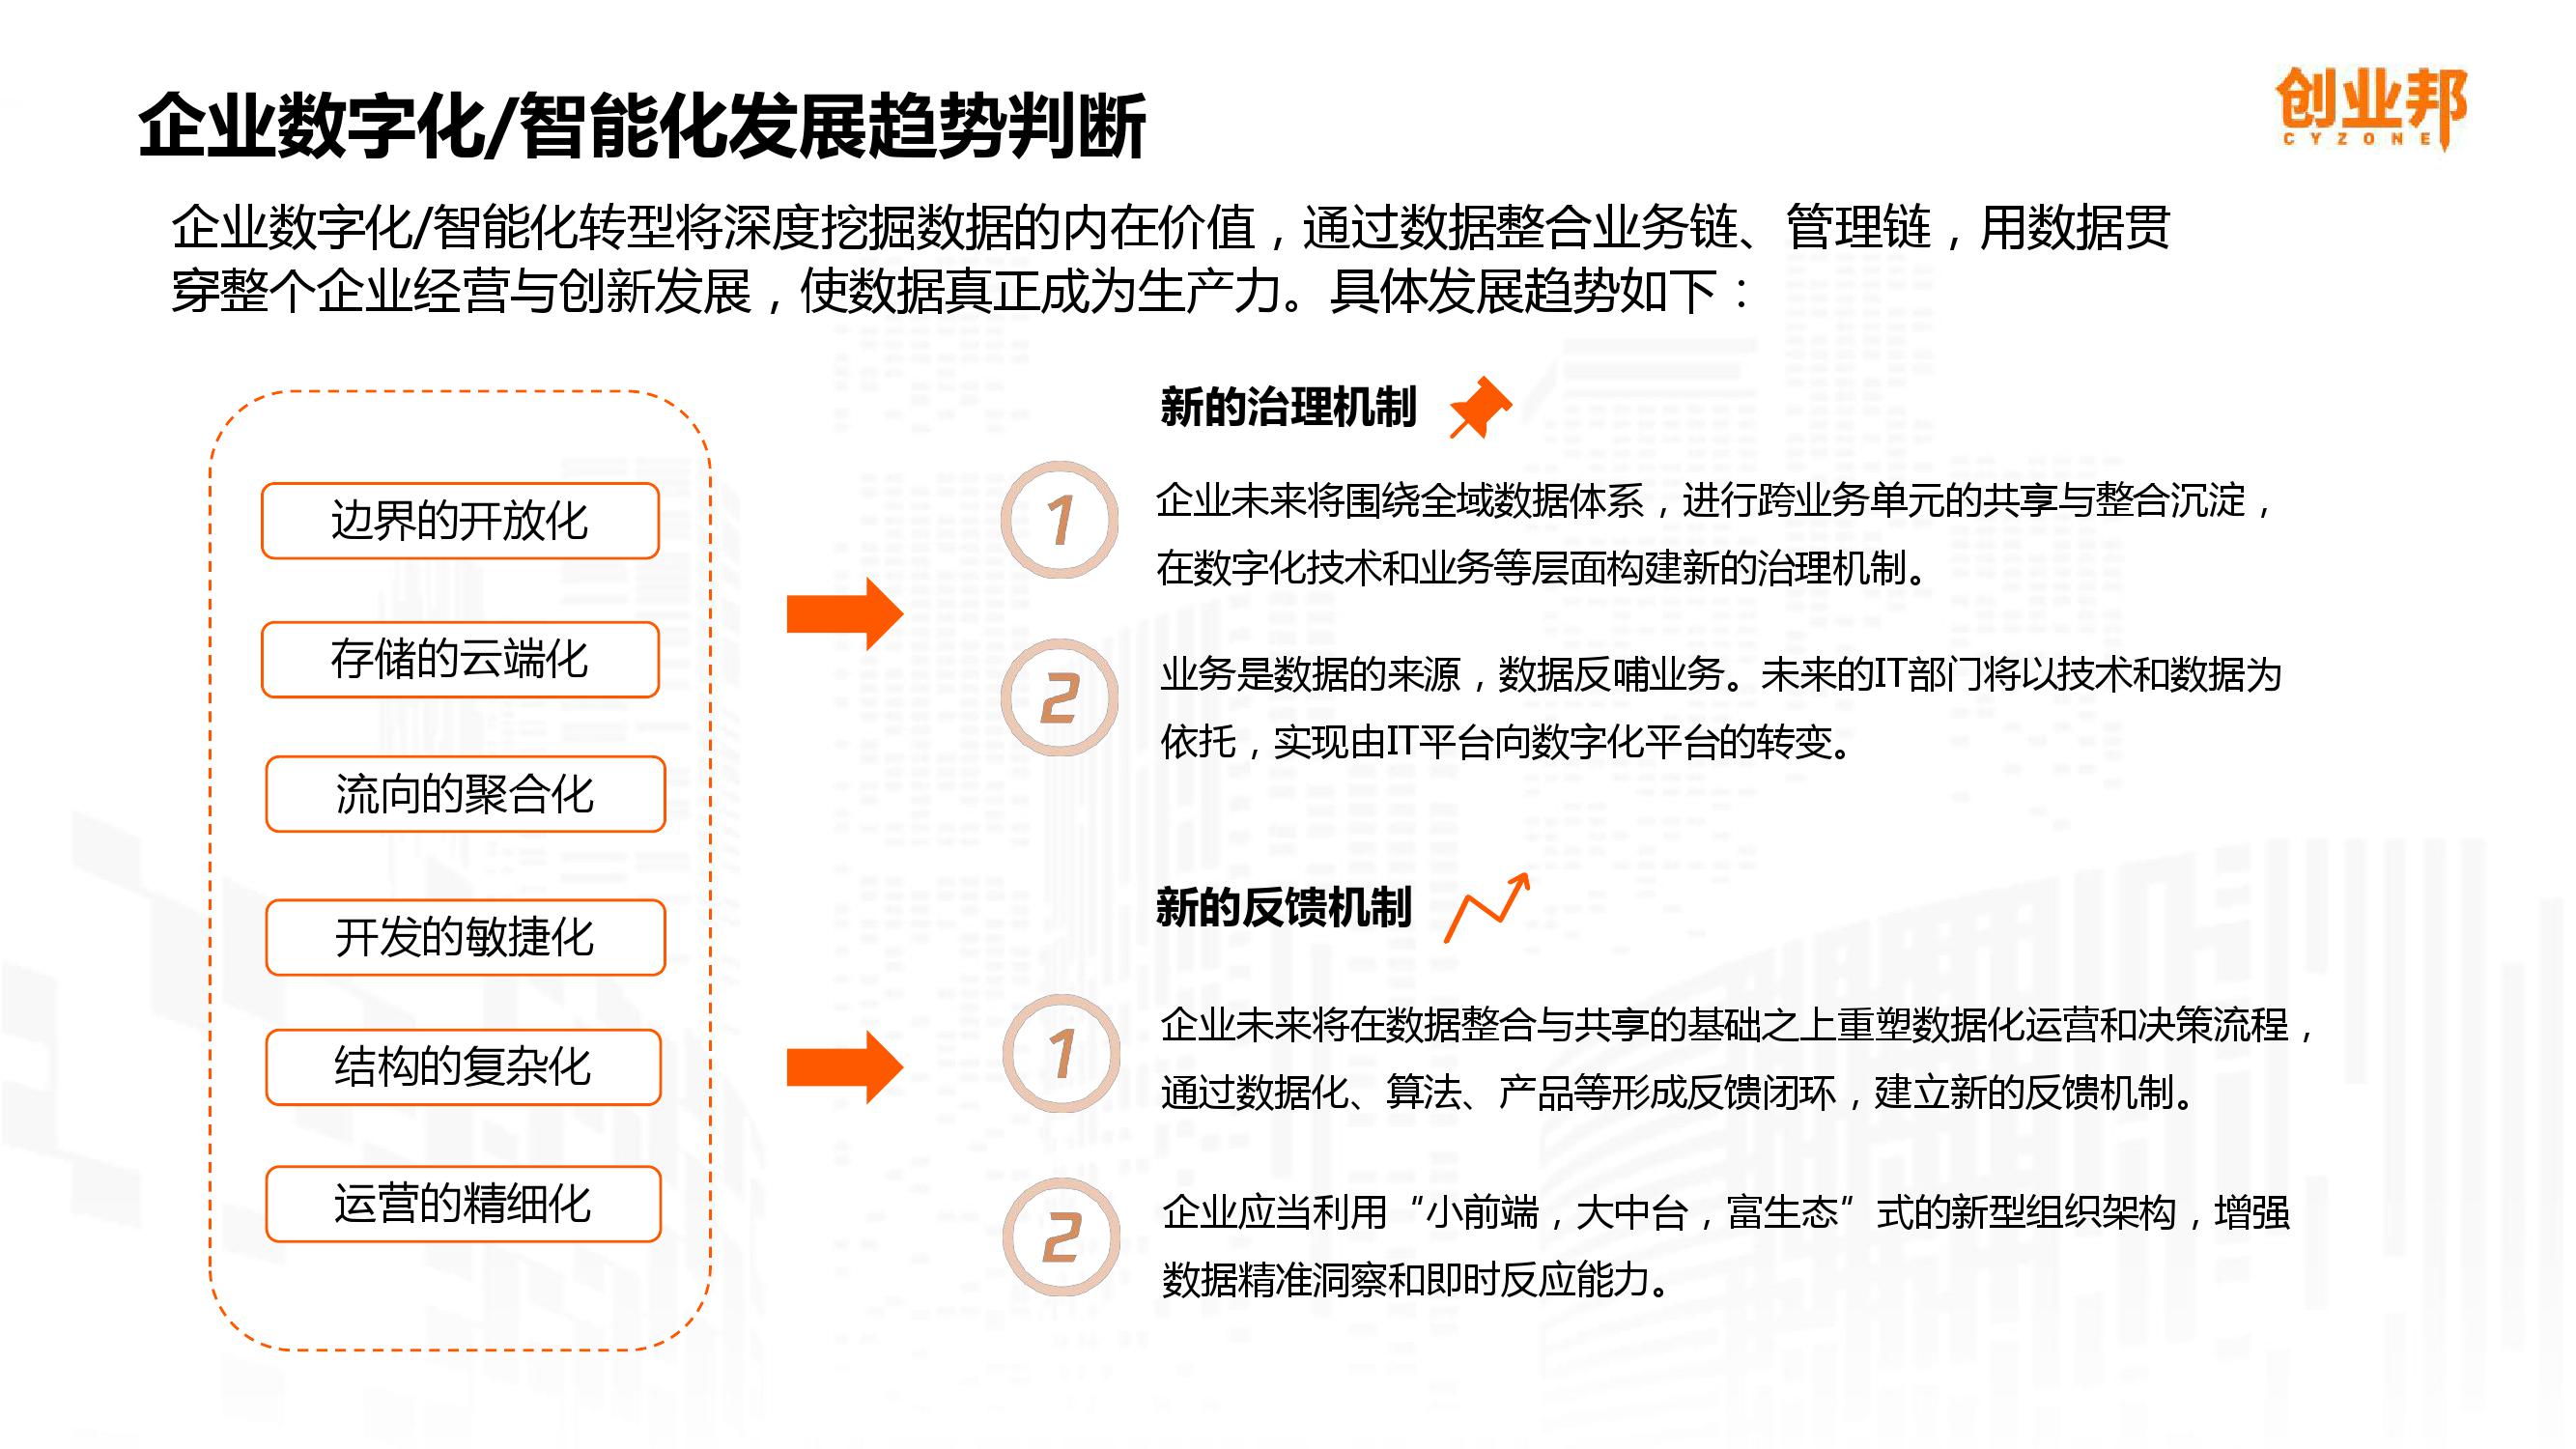 2019中国企业数字化智能化研究报告_000043-3